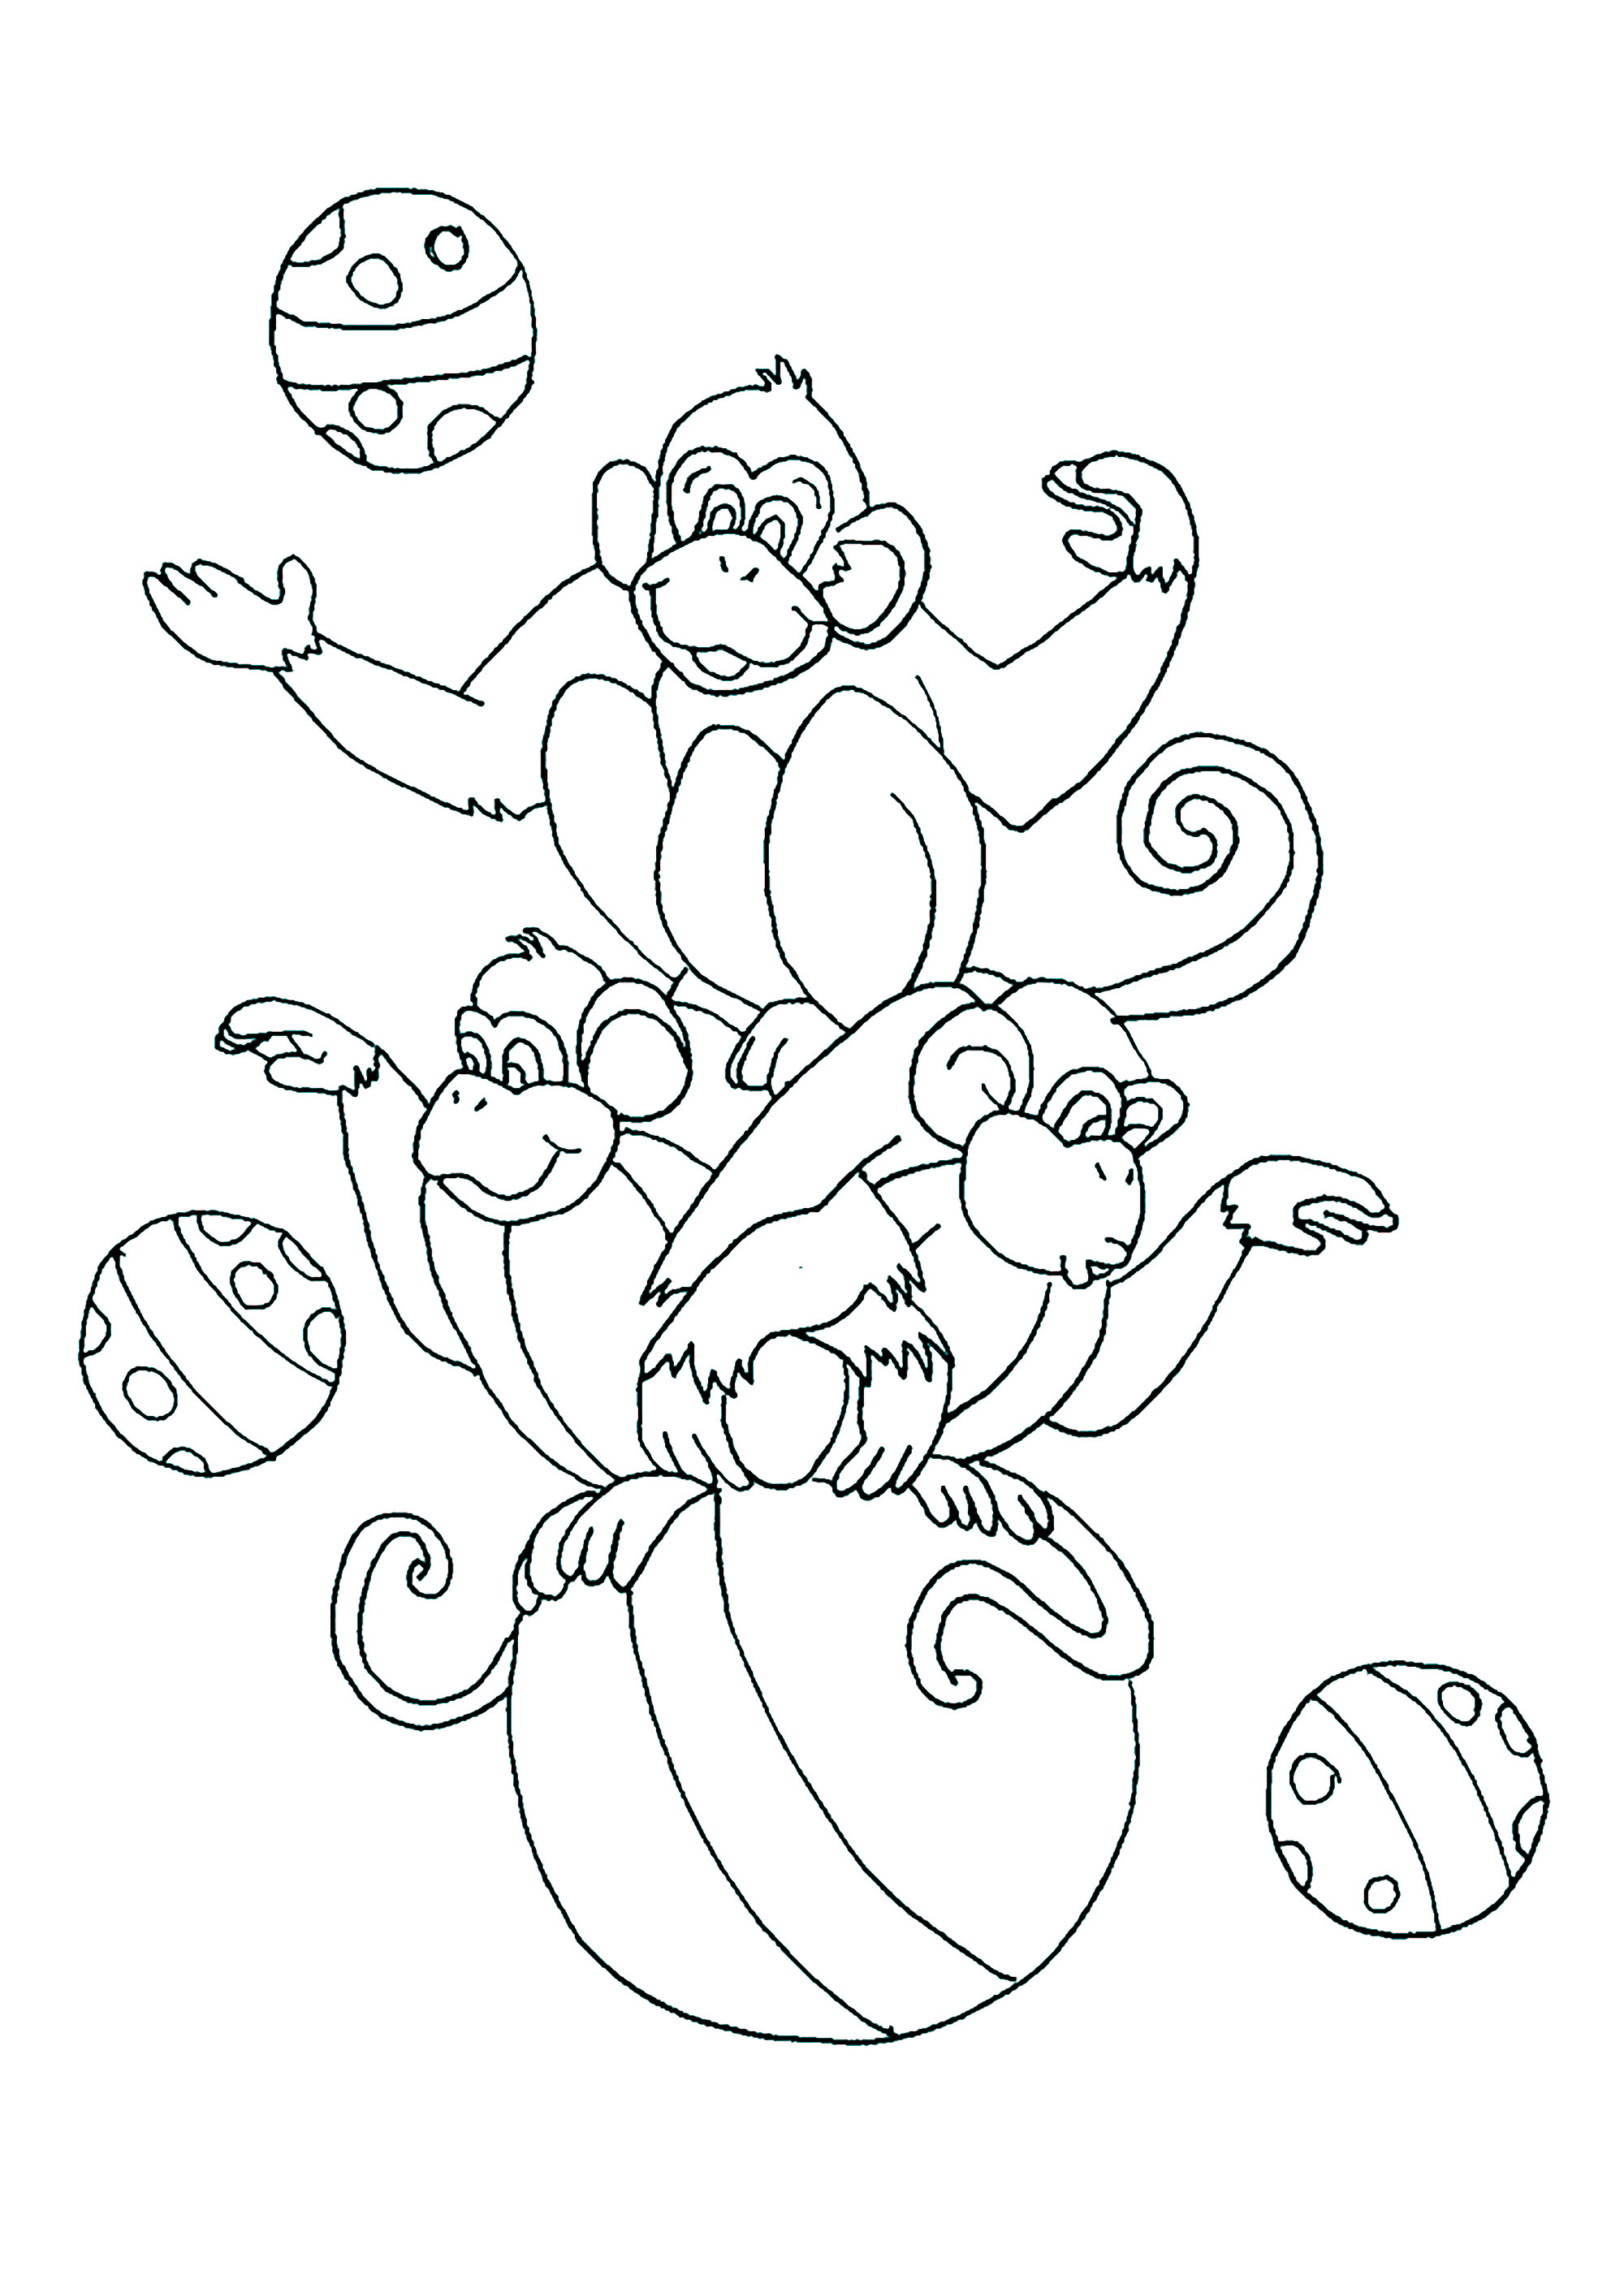 Singes de cirque, jouant sur un grand ballon. Colorie ces trois singes et tous leurs ballons